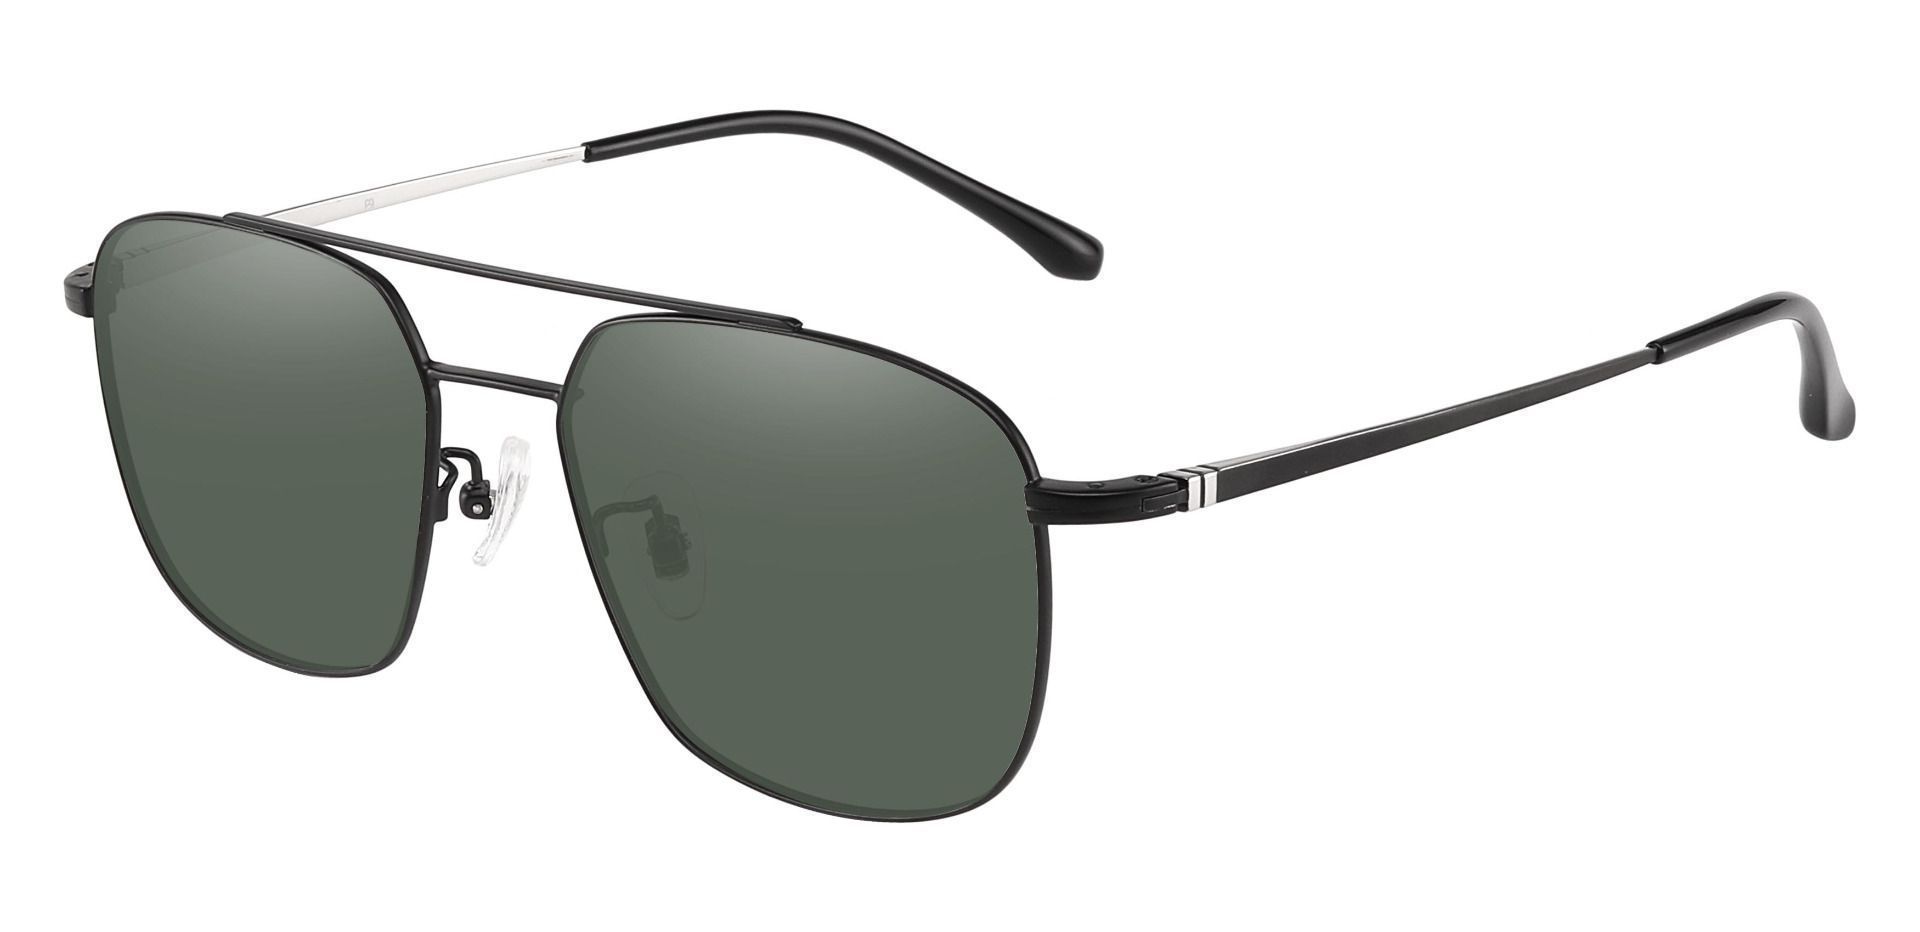 Trevor Aviator Reading Sunglasses - Black Frame With Green Lenses